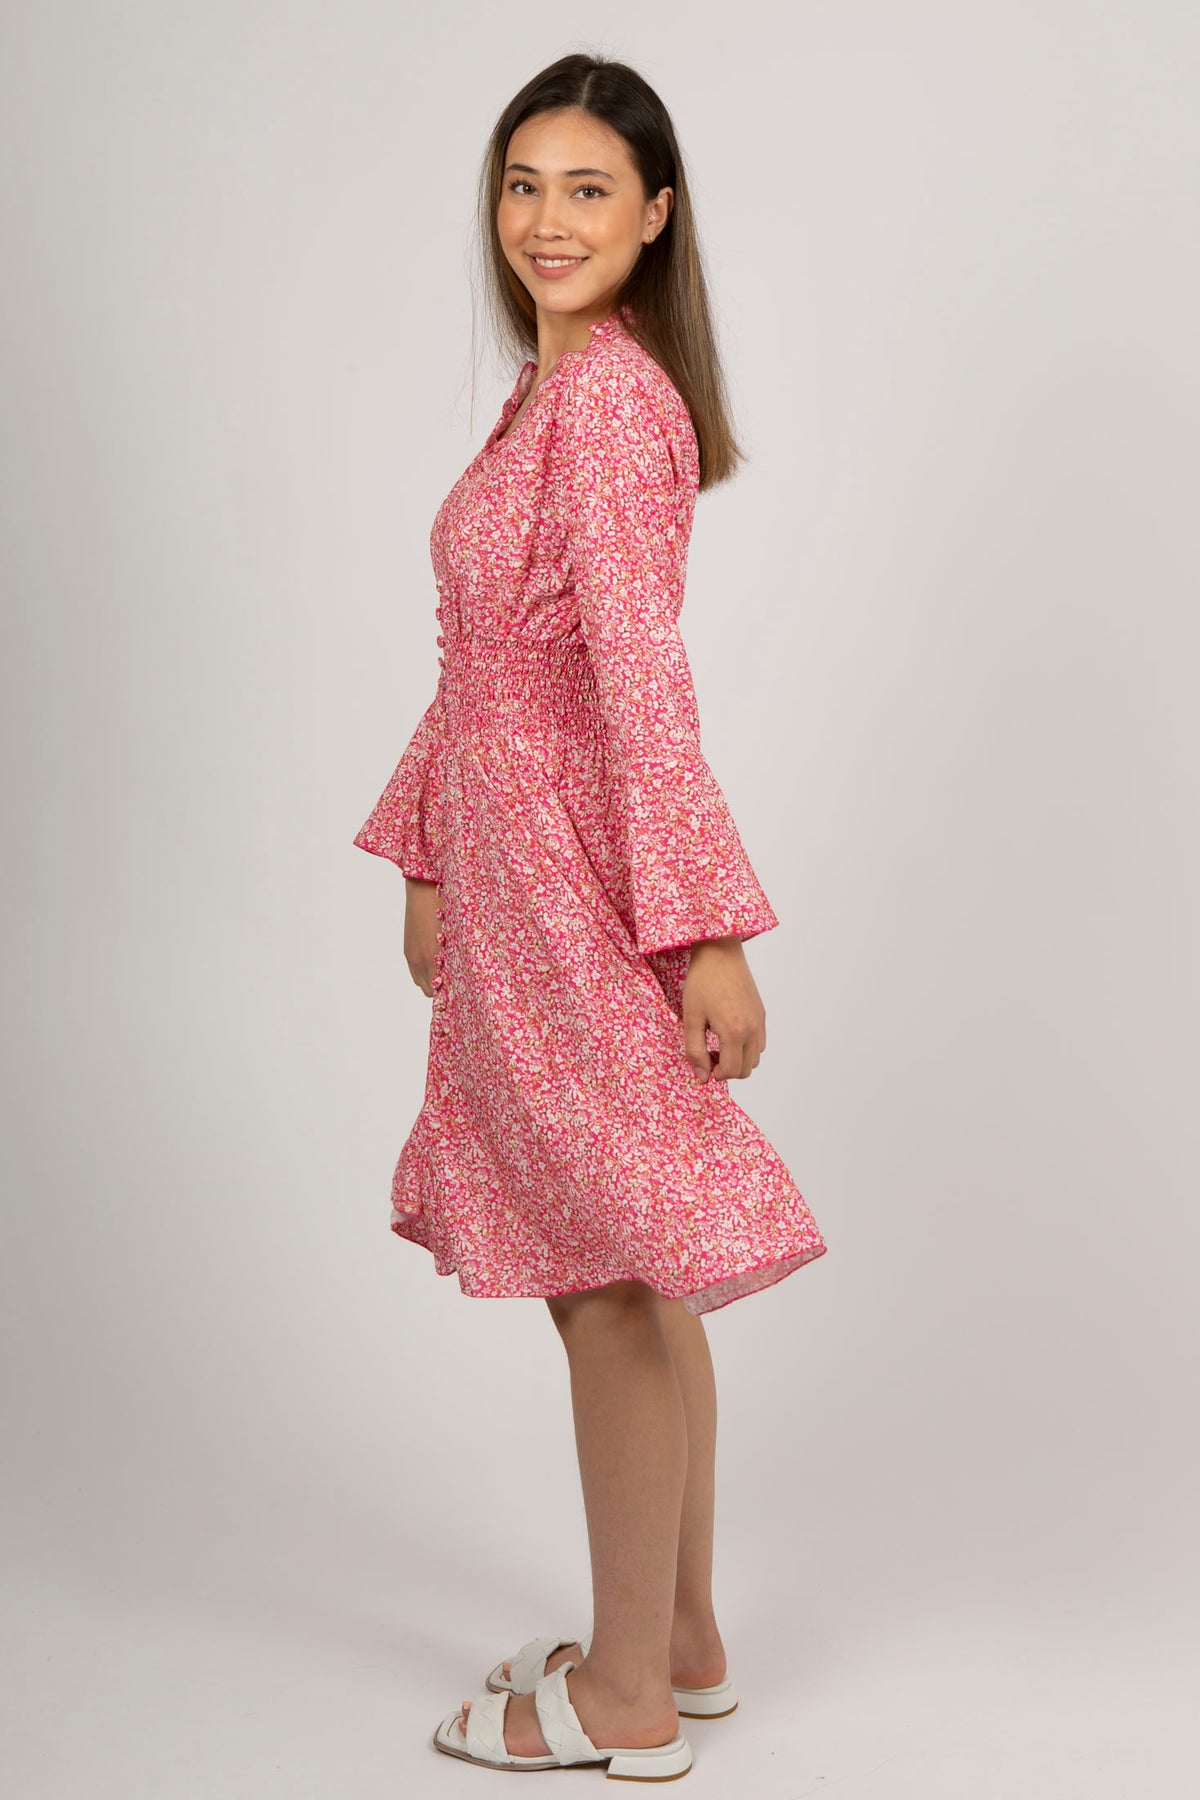 Sally Short Dress - Pink Flower